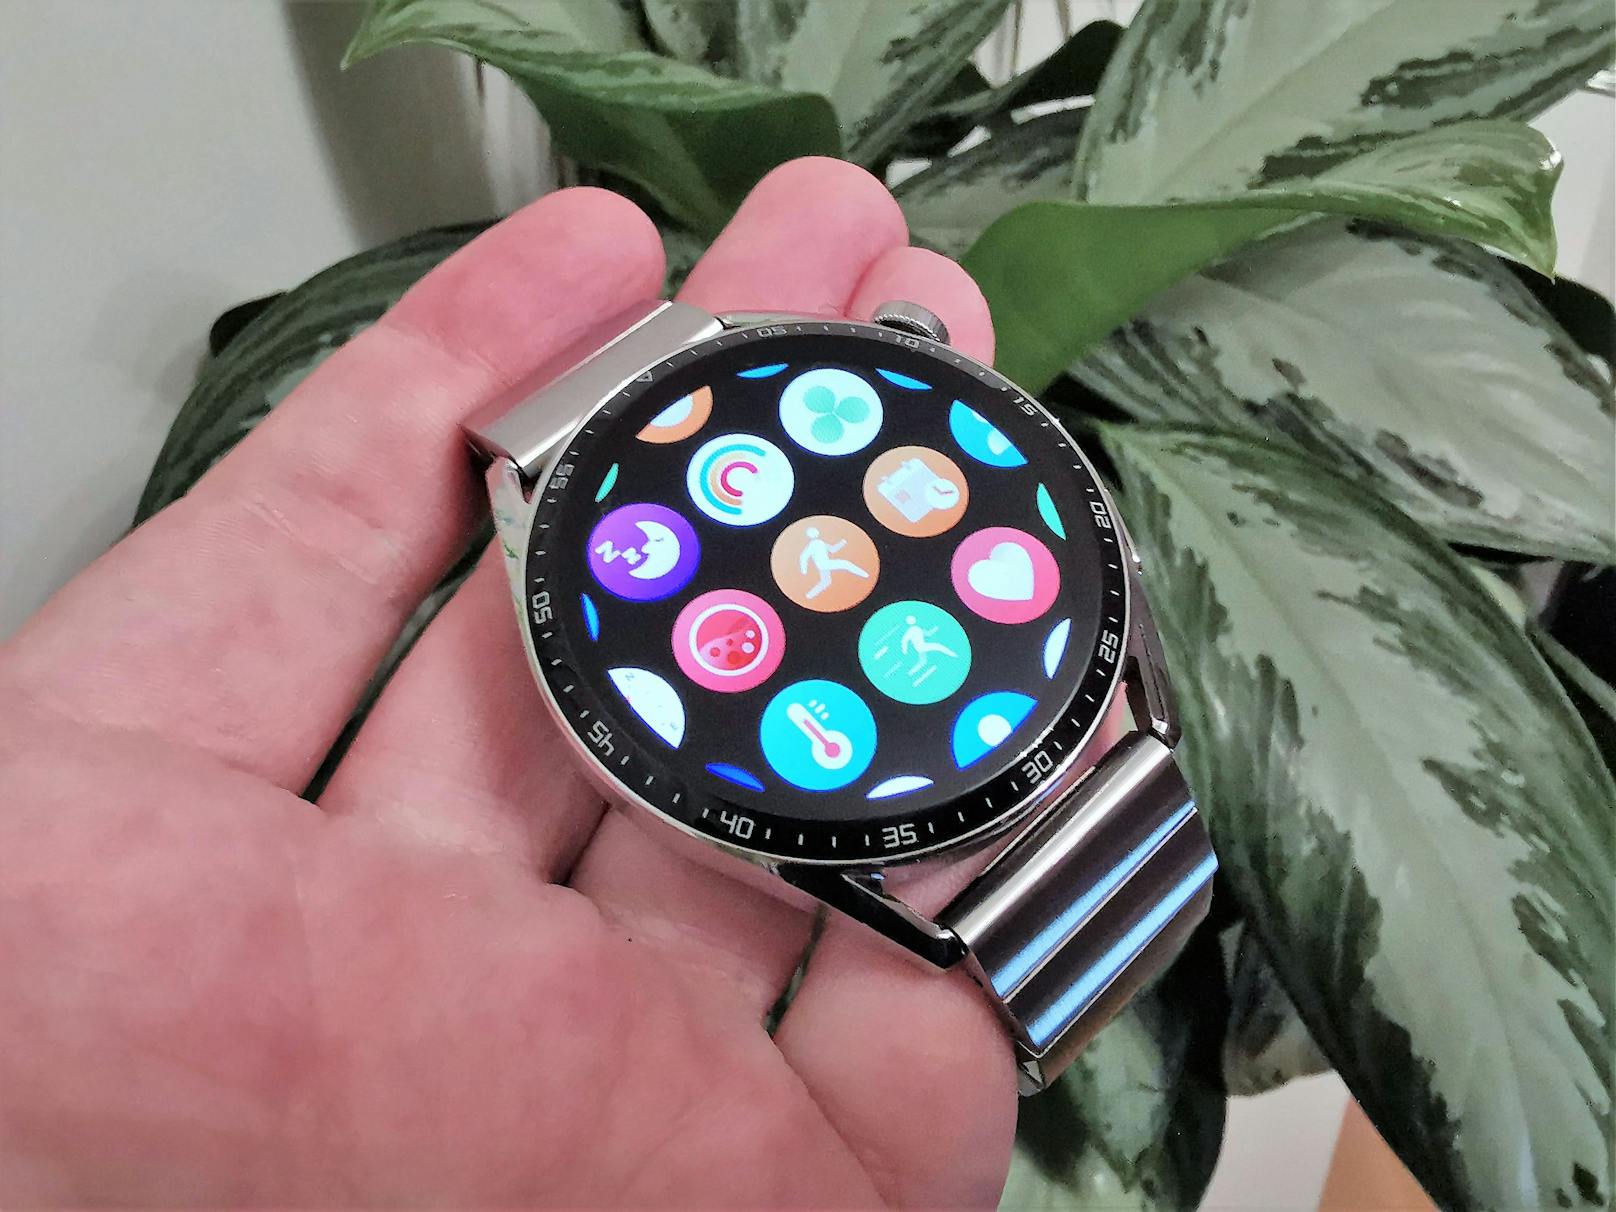 Der Preis mag mit rund 329 Euro hoch erscheinen, dafür bekommt man aber eine schlaue Smartwatch mit hervorragender Verarbeitung.